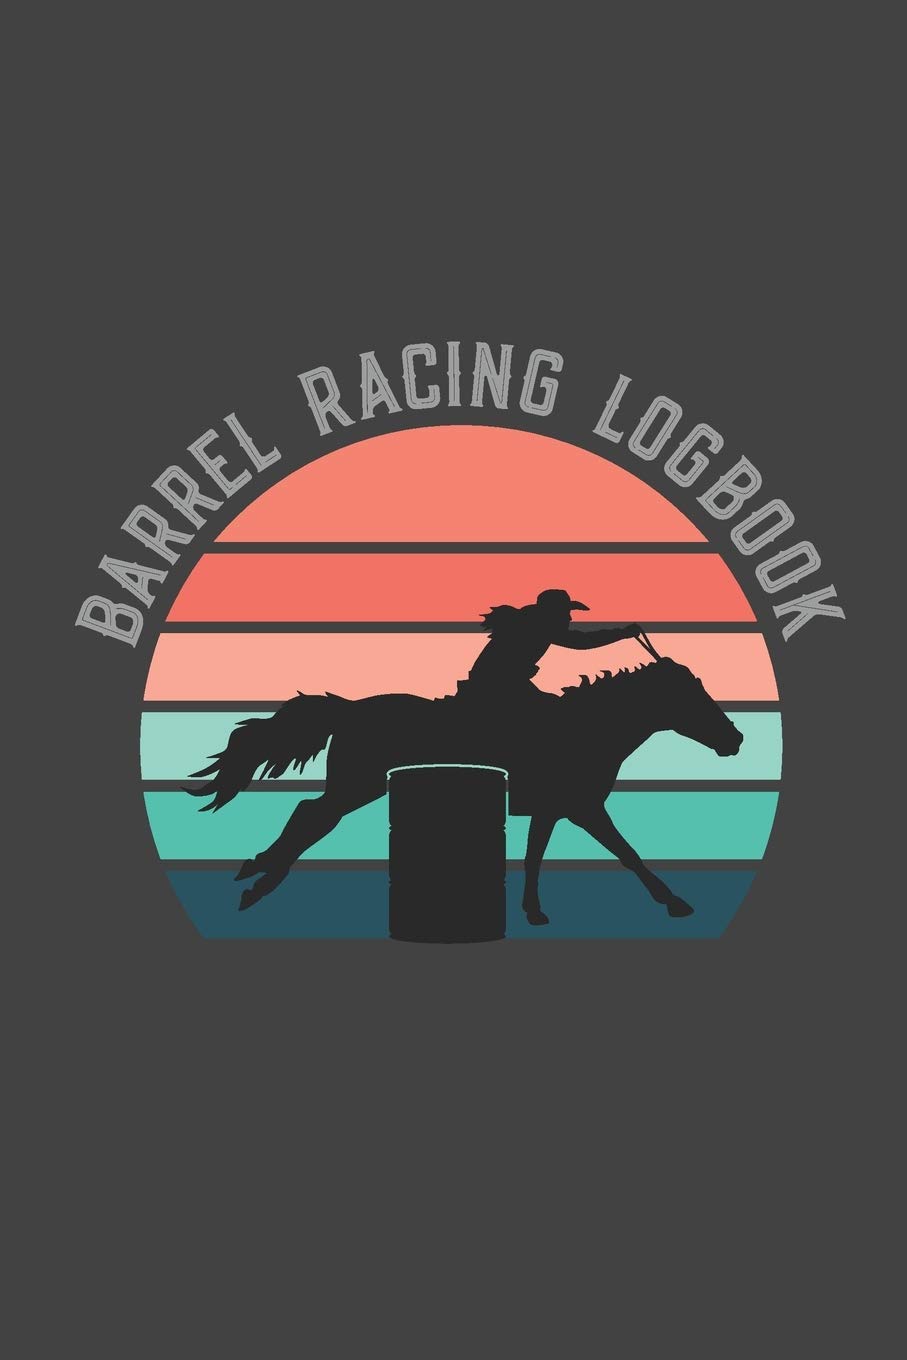 730 Barrel Racing Stock Photos Pictures  RoyaltyFree Images  iStock   Rodeo barrel racing Horse barrel racing Barrel racing illustration